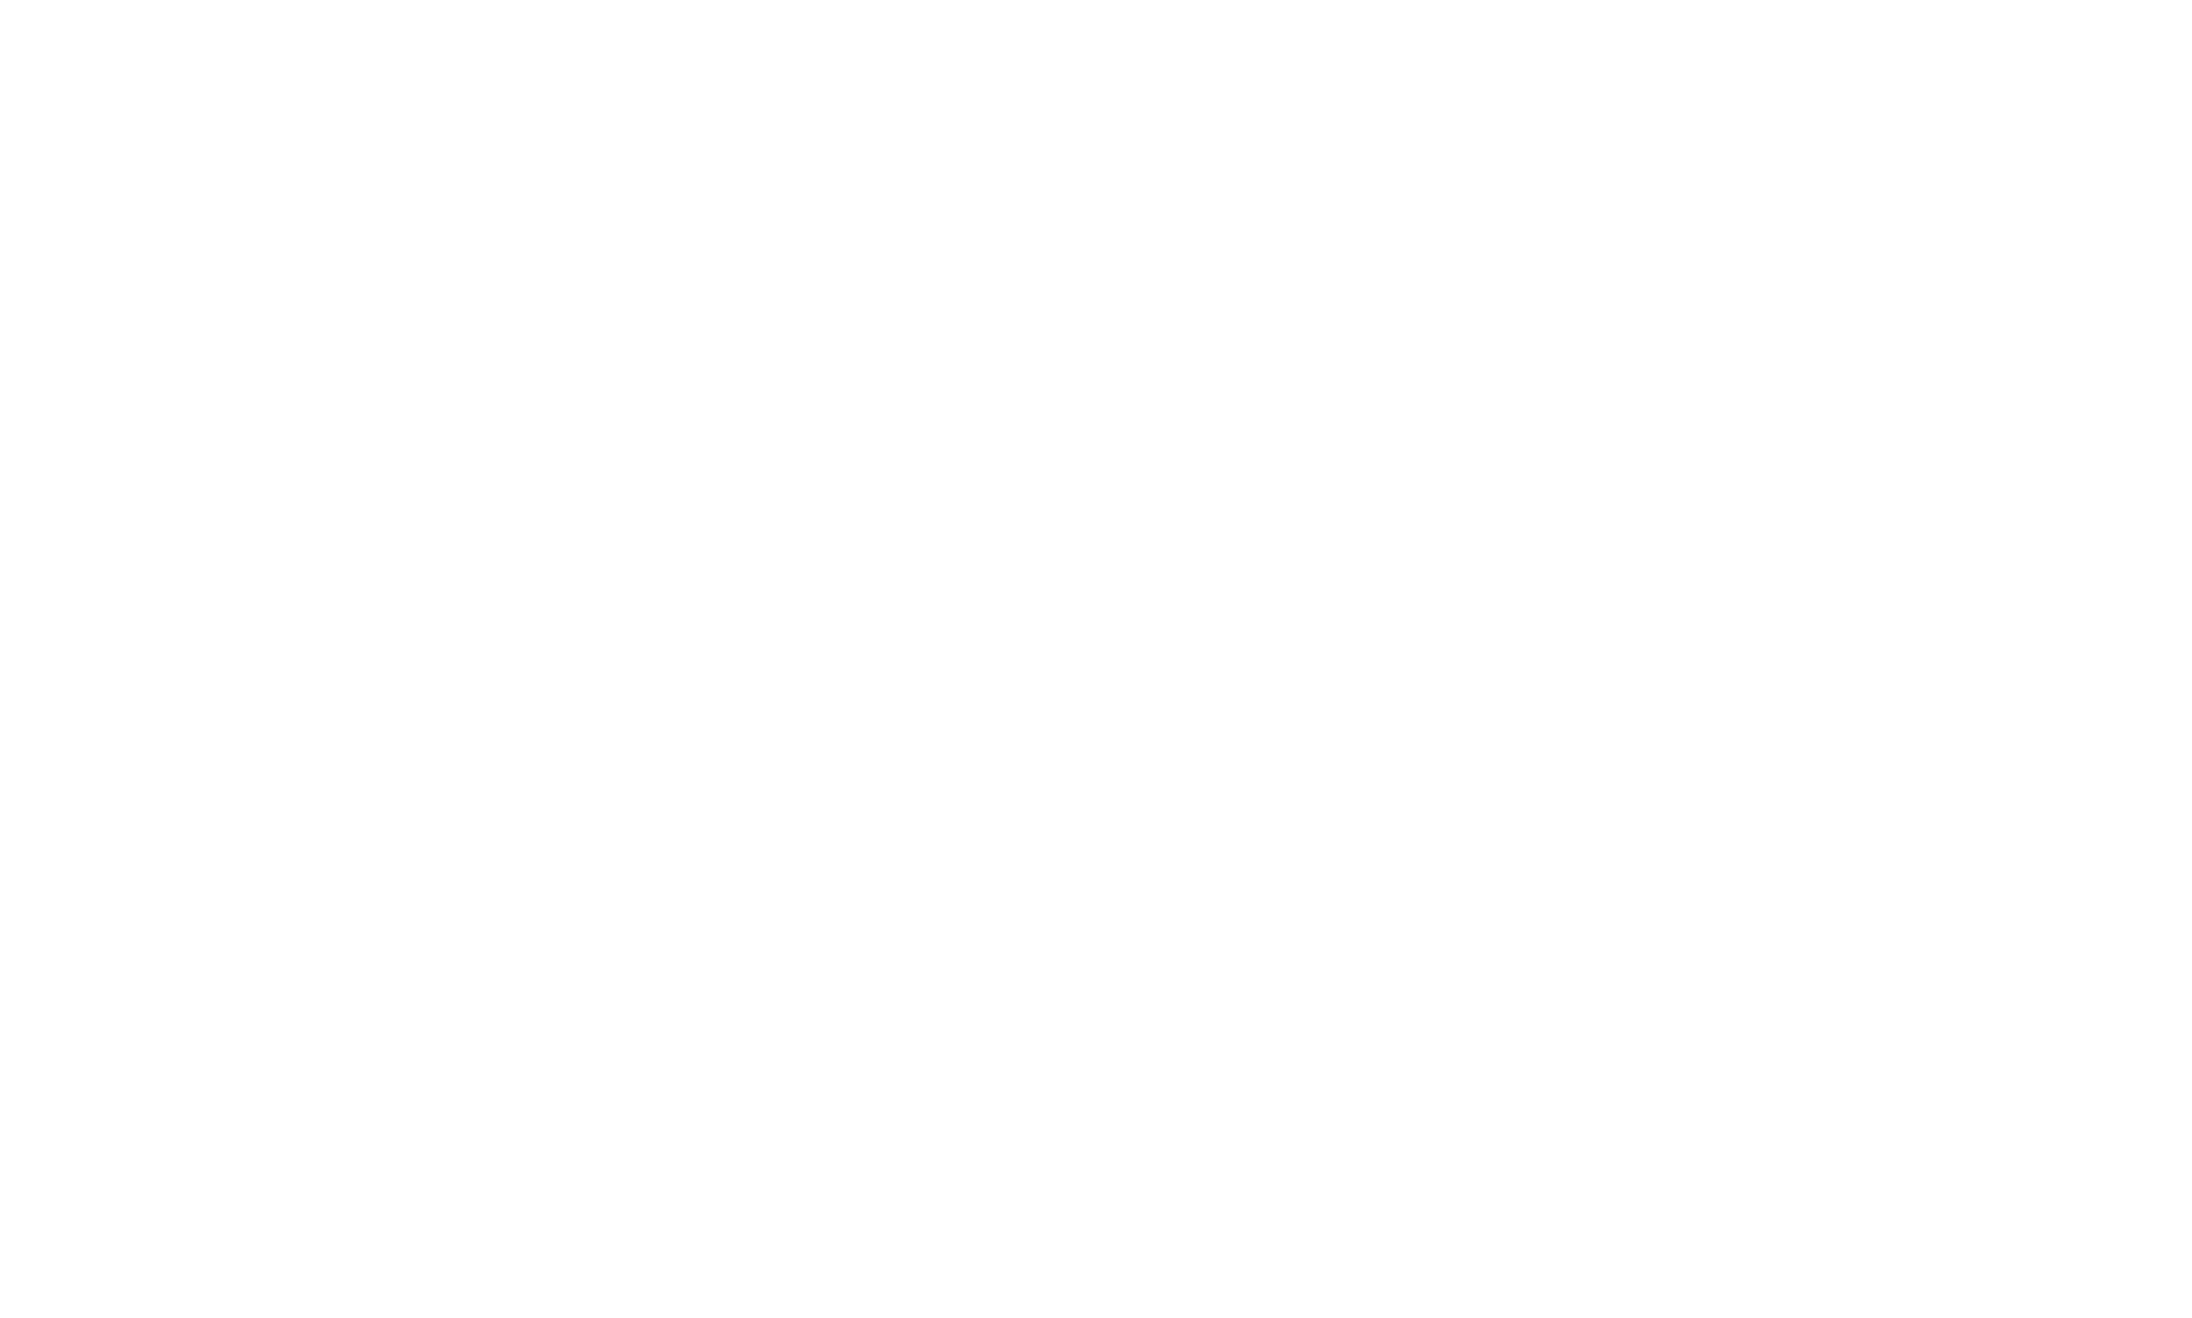 National public organization of Mont Saint-Michel